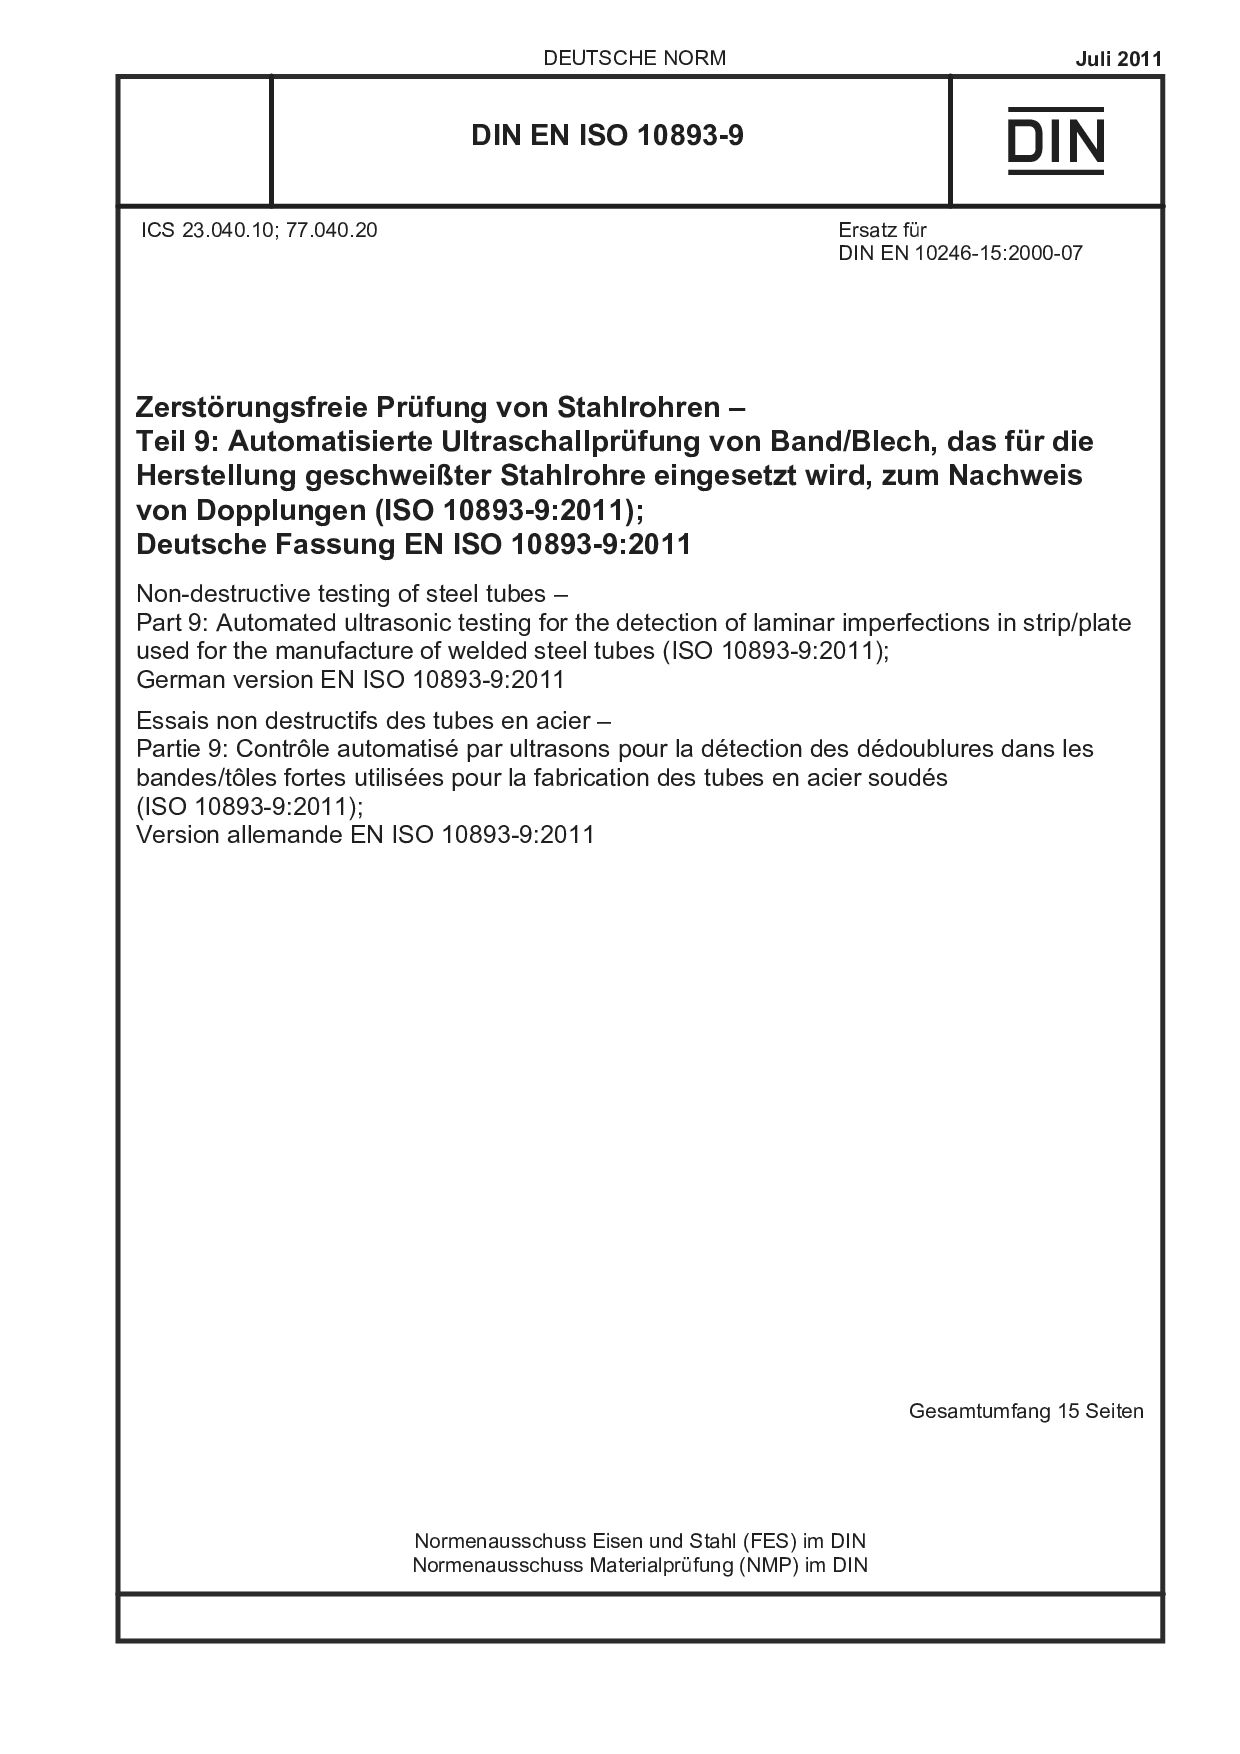 DIN EN ISO 10893-9:2011封面图